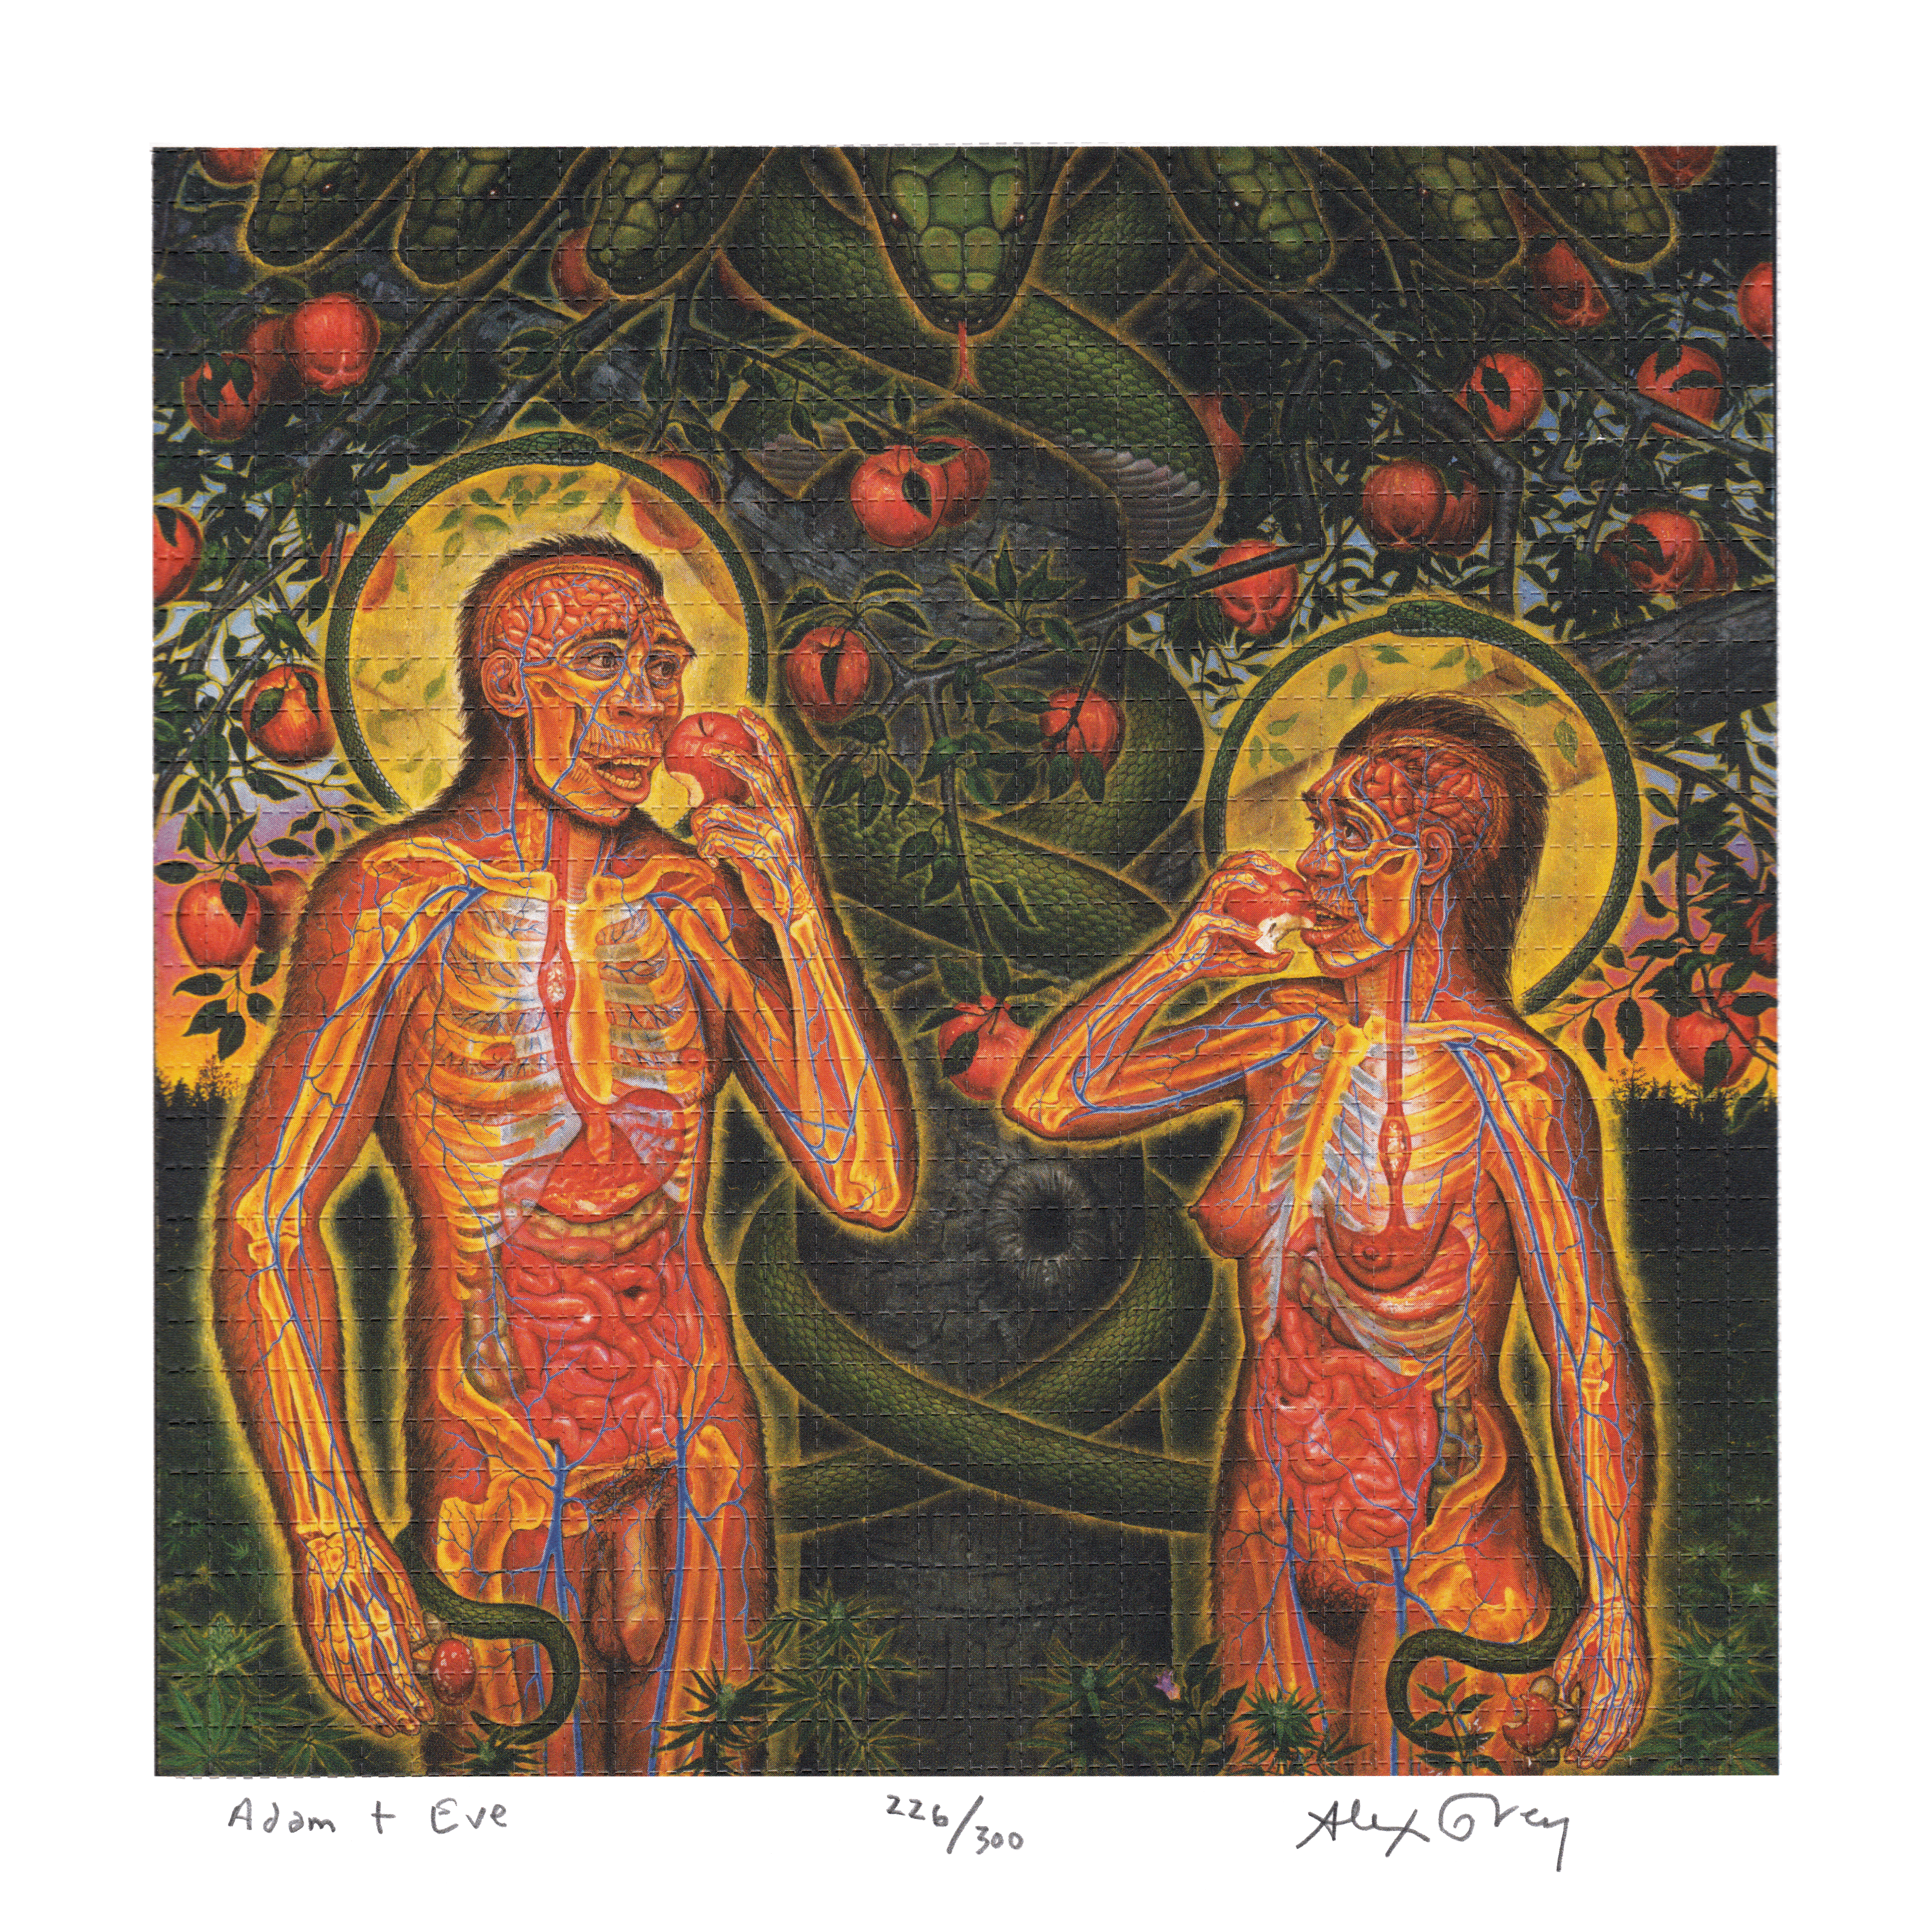 Adam & Eve by Alex Grey as LSD Blotter Art #226/300